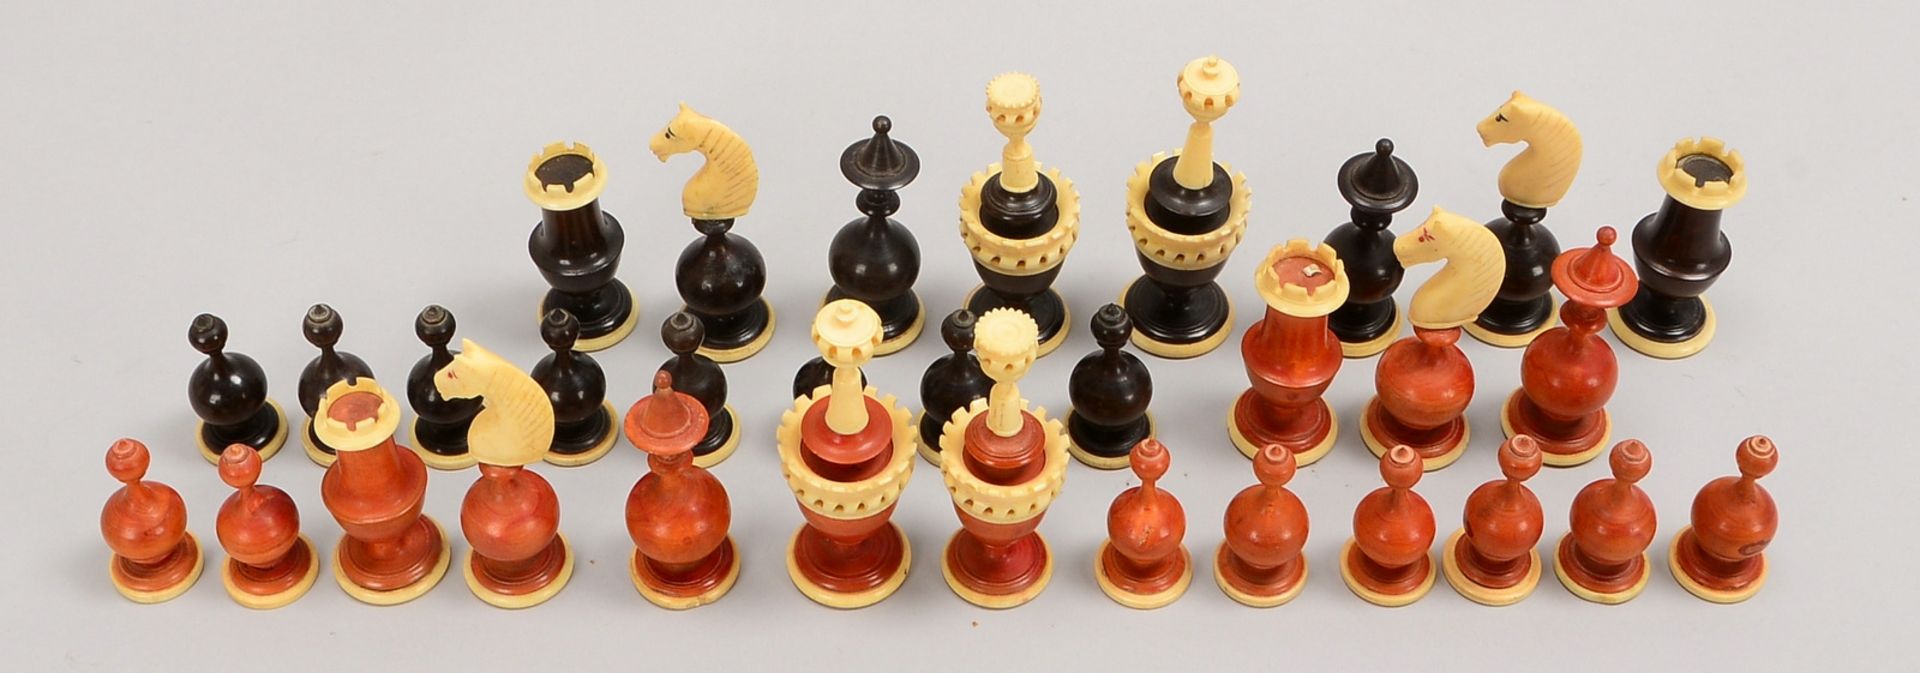 Schach-Spielfiguren, Bein/Holz, kompl., im Karton (einzelner 'Springer' mit Klebstelle) - Bild 2 aus 2